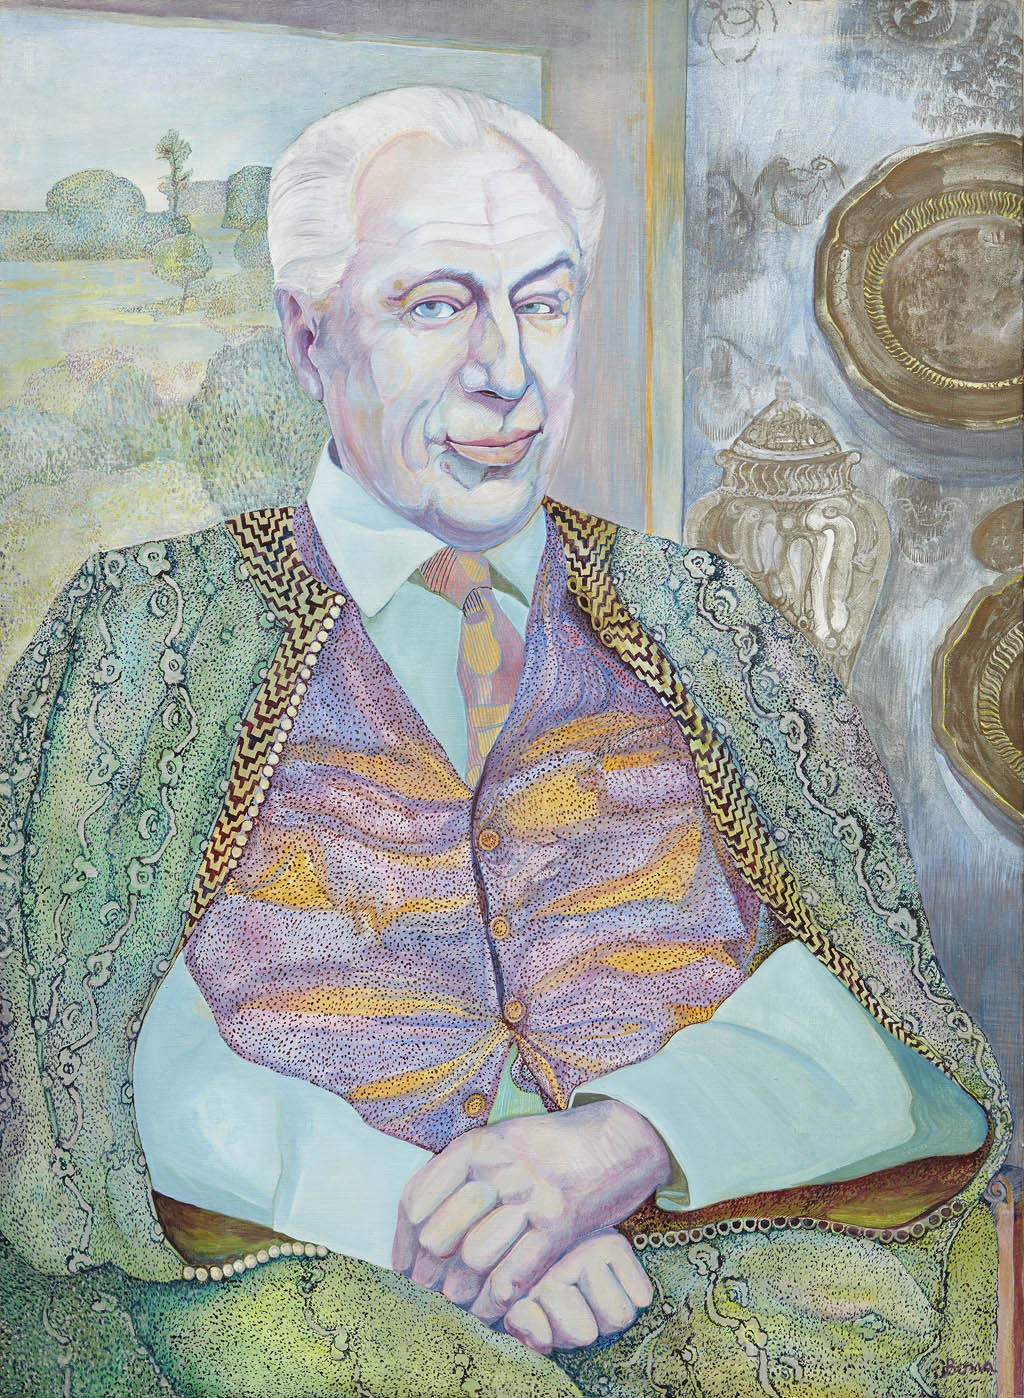 Bona de Mandiargues - Untitled [Portrait of Octavio Paz] - oil on canvas